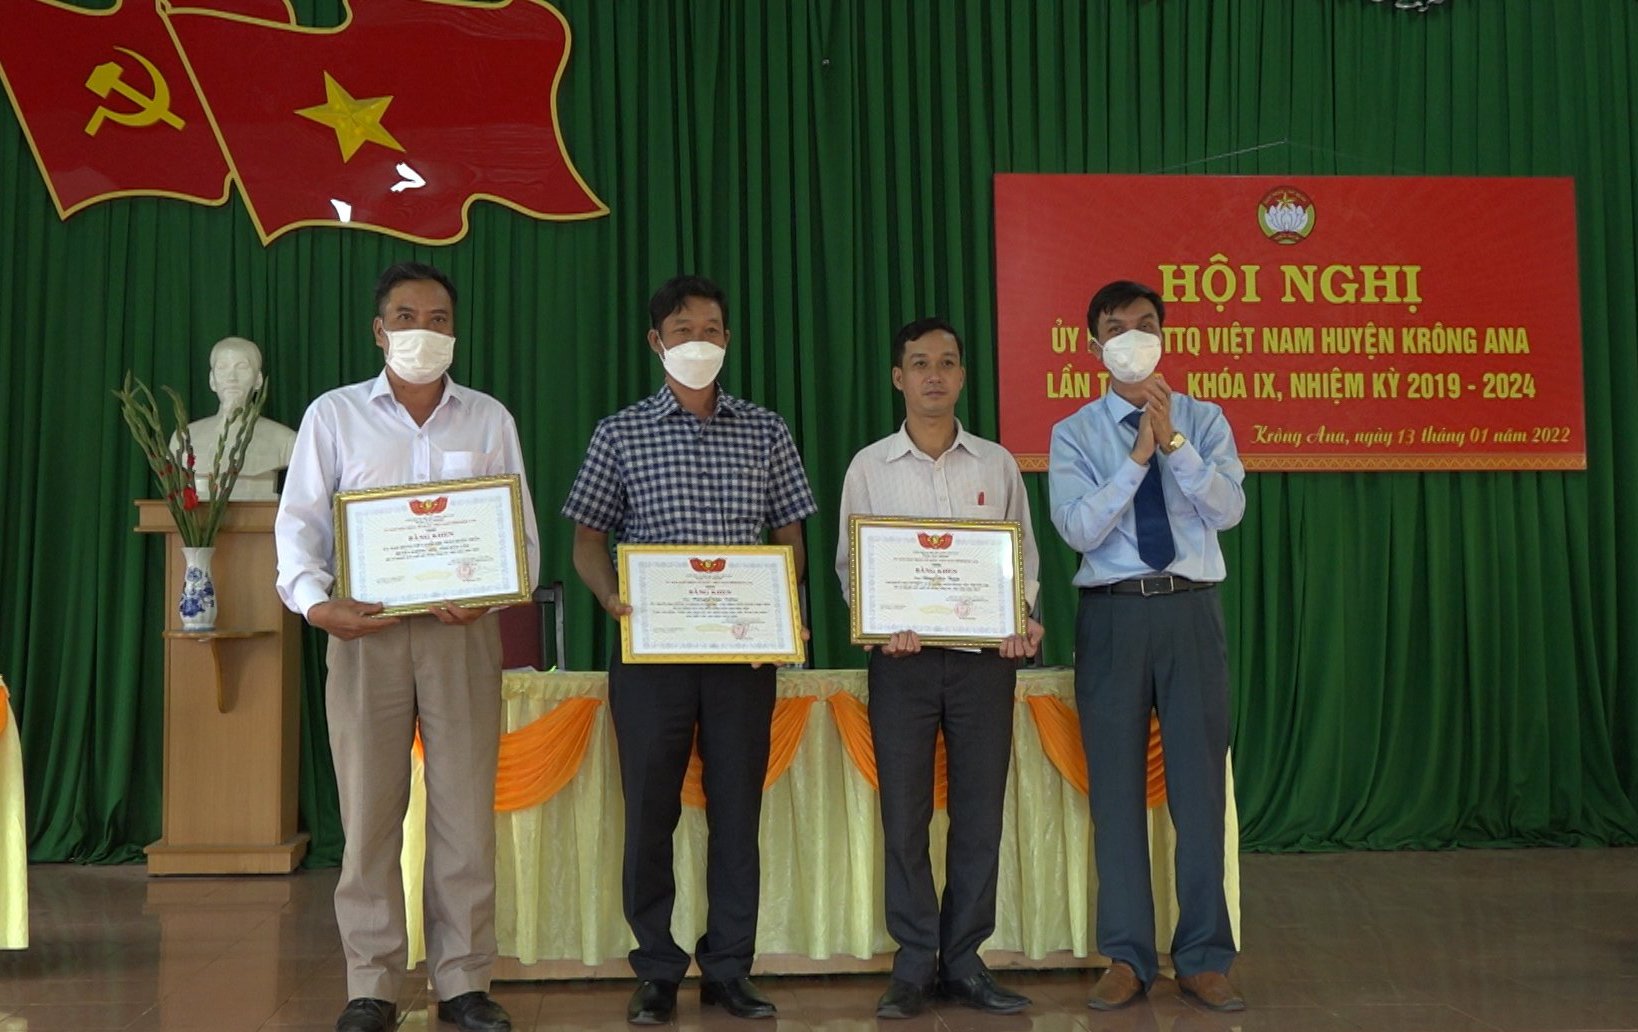 Ủy ban MTTQ Việt Nam huyện Krông Ana tổng kết công tác năm 2021 